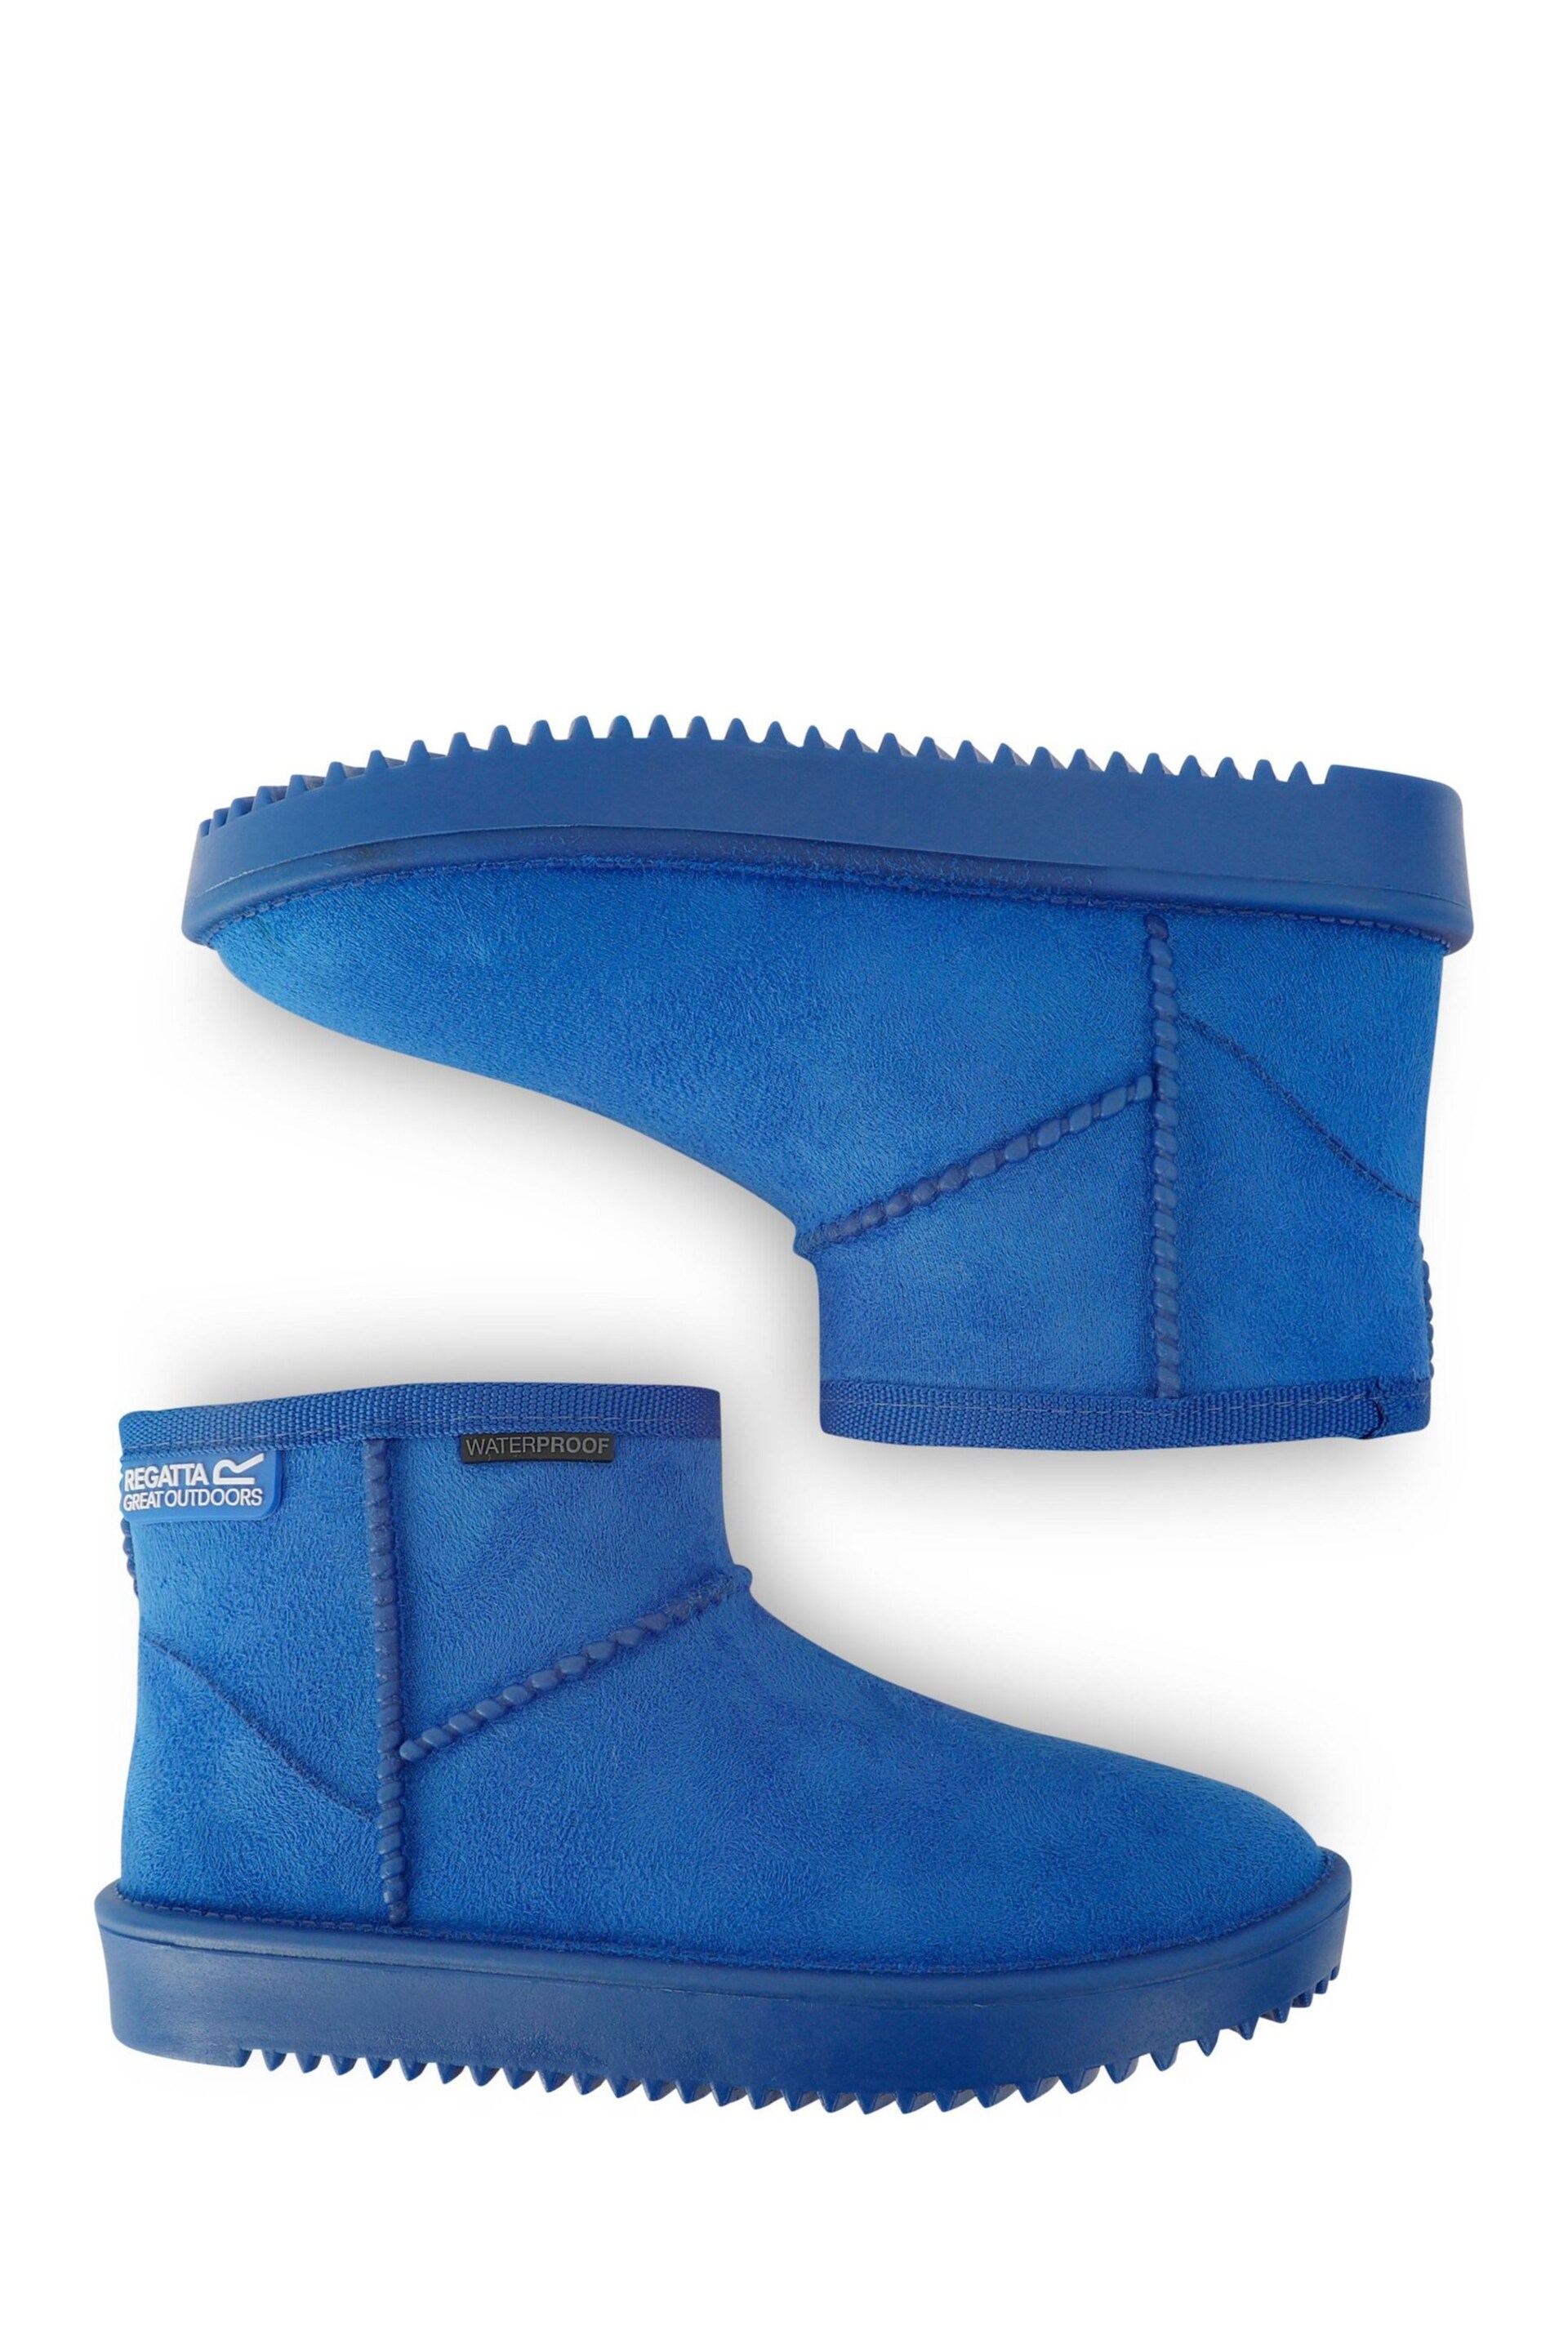 Regatta Blue Girls Risley Waterproof Faux Fur Lined Boots - Image 4 of 6